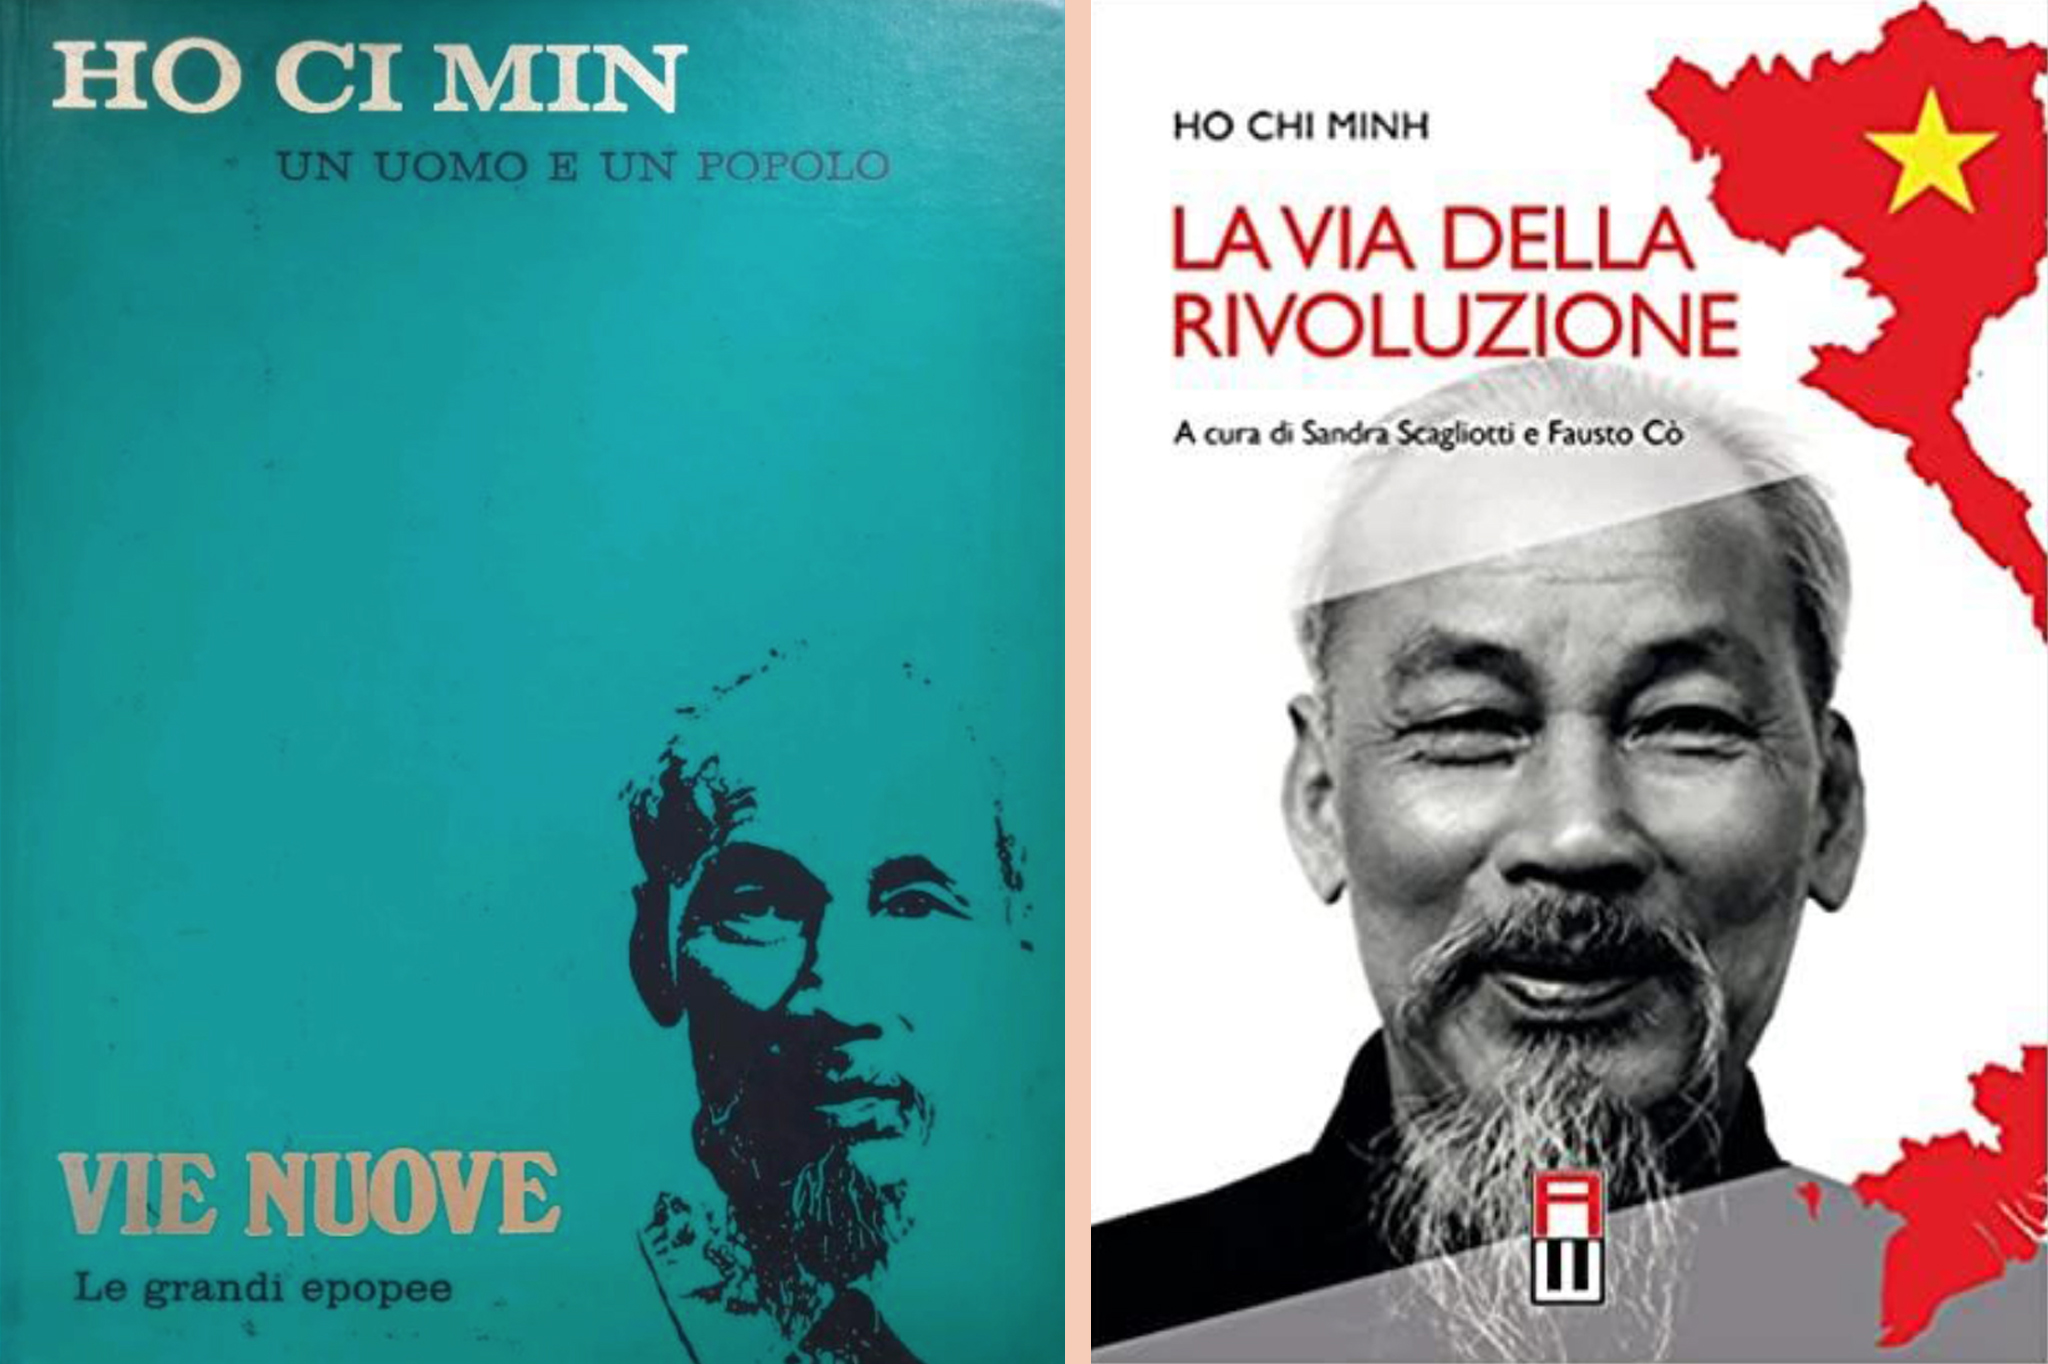 Tiếp nhận hai ấn phẩm về Chủ tịch Hồ Chí Minh bằng tiếng Italy